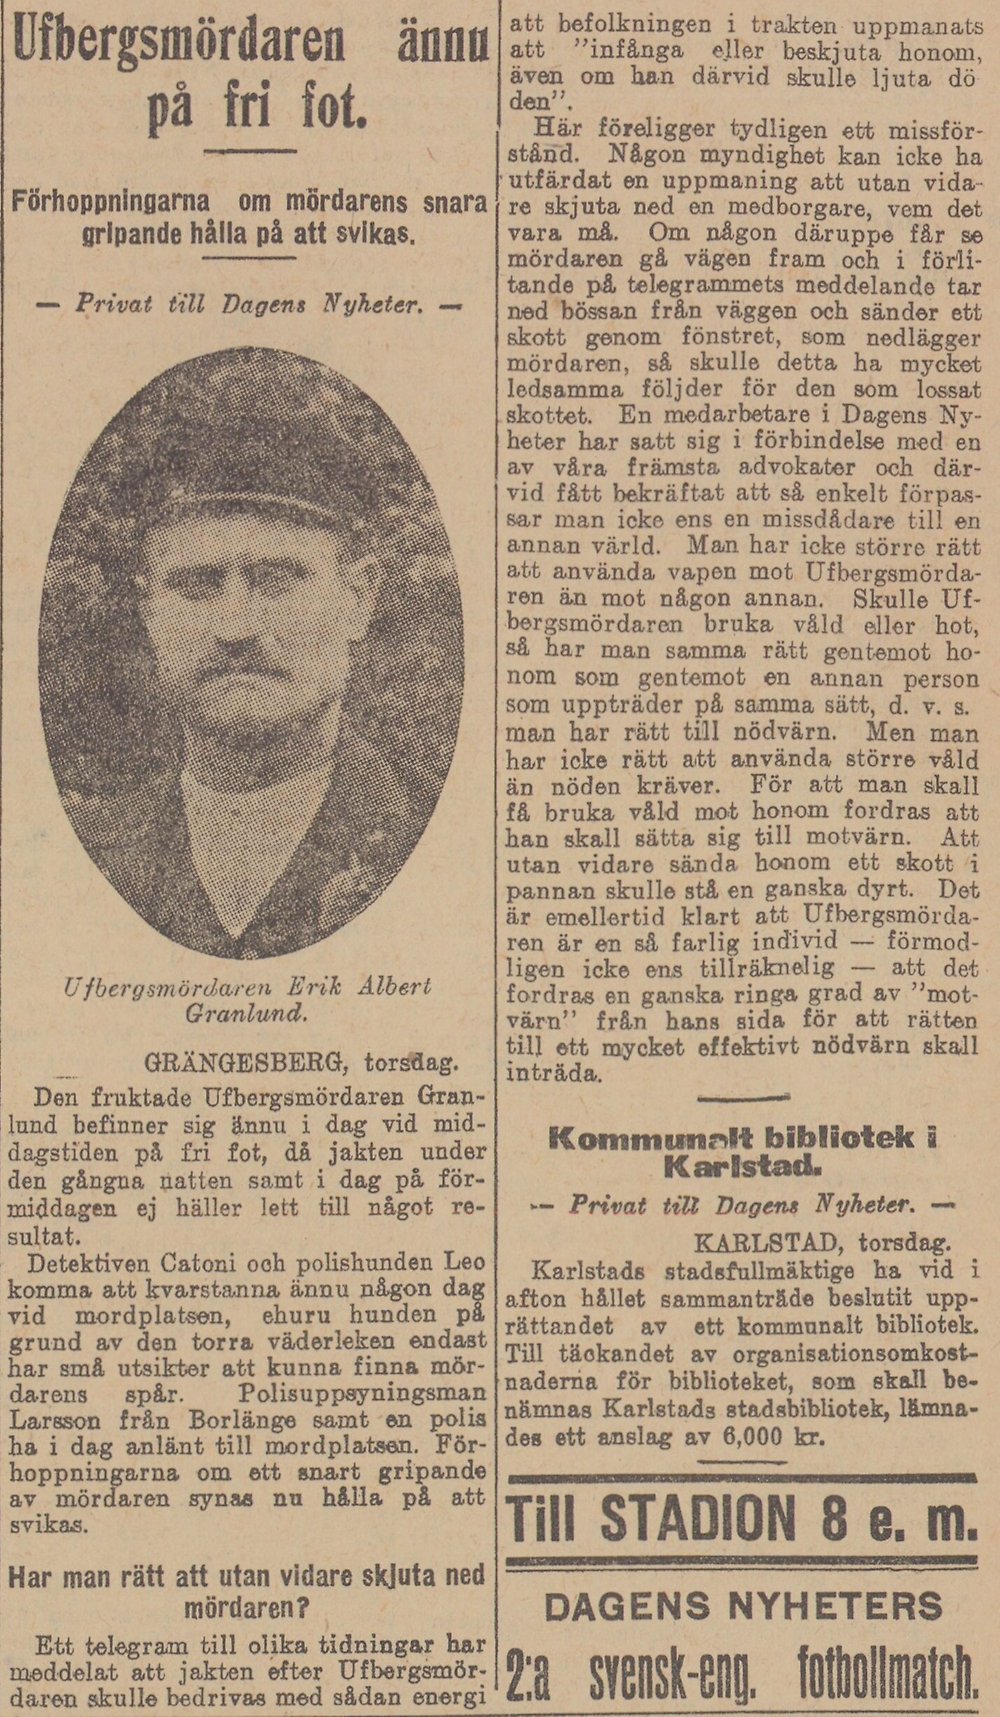 Gulnat tidningsklipp med bild av mustaschprydd man. Text: Ufbergsmördaren ännu på fri fot.